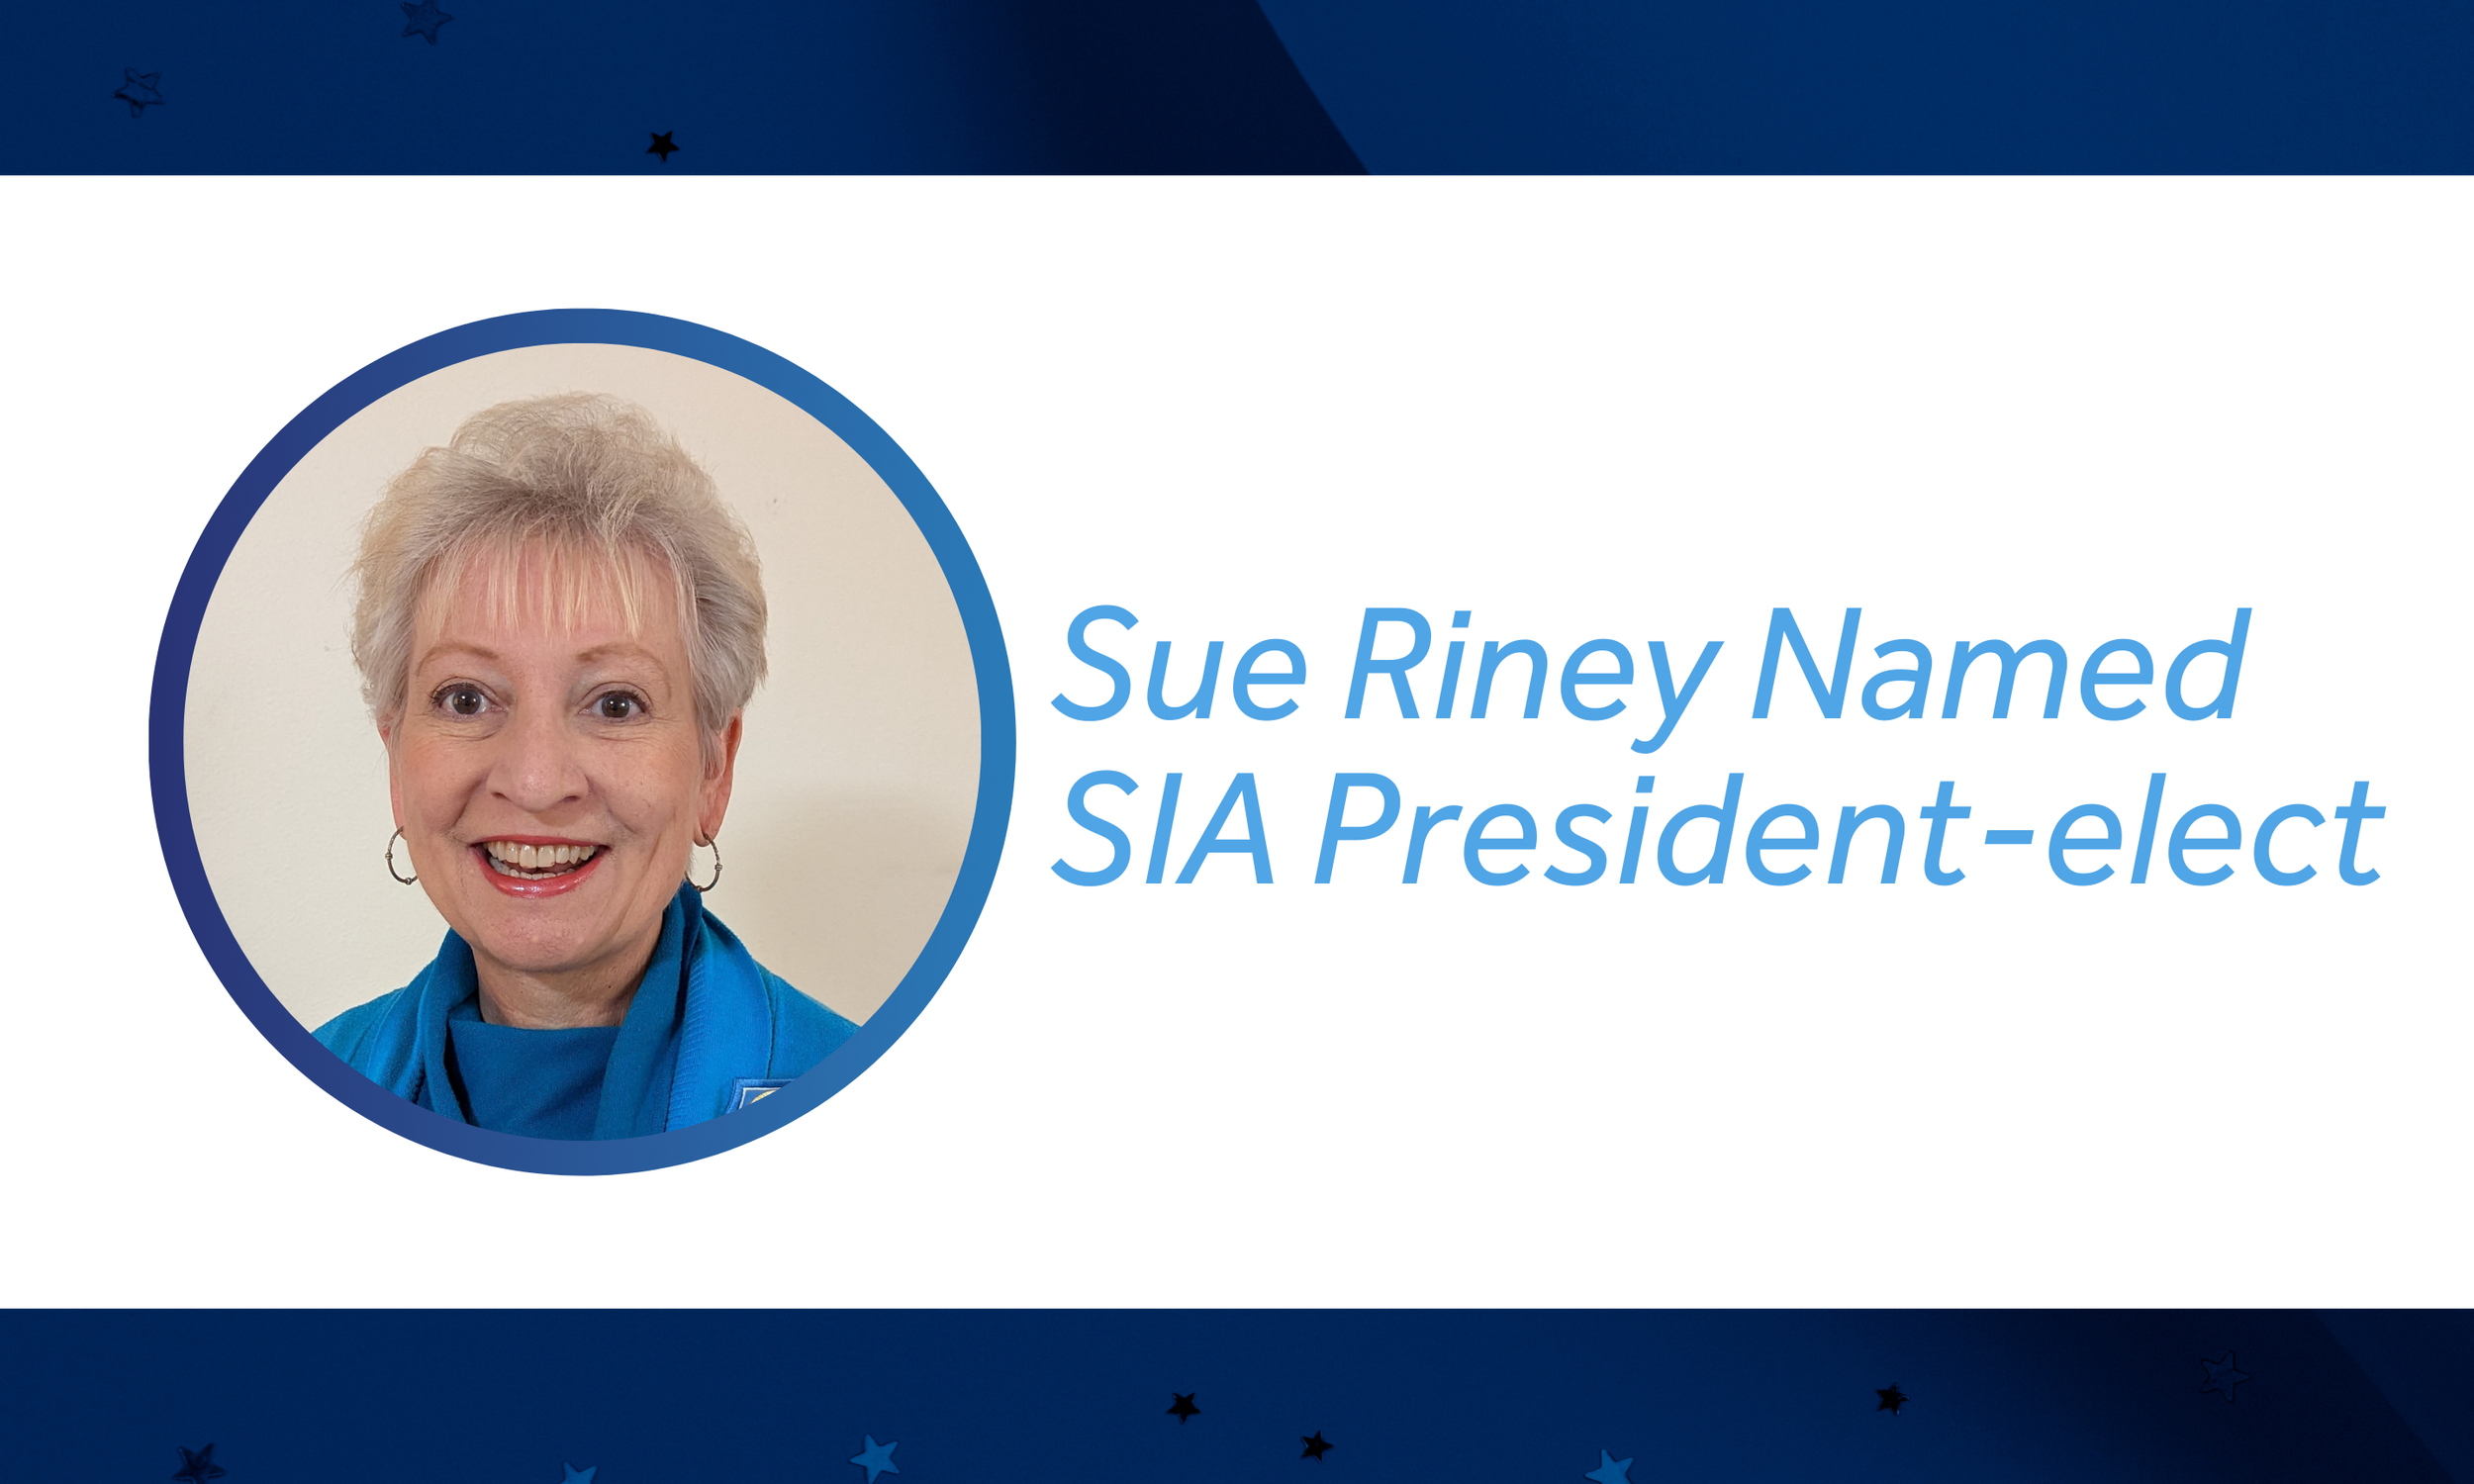 Sue Riney nombrada Presidenta electa de SIA